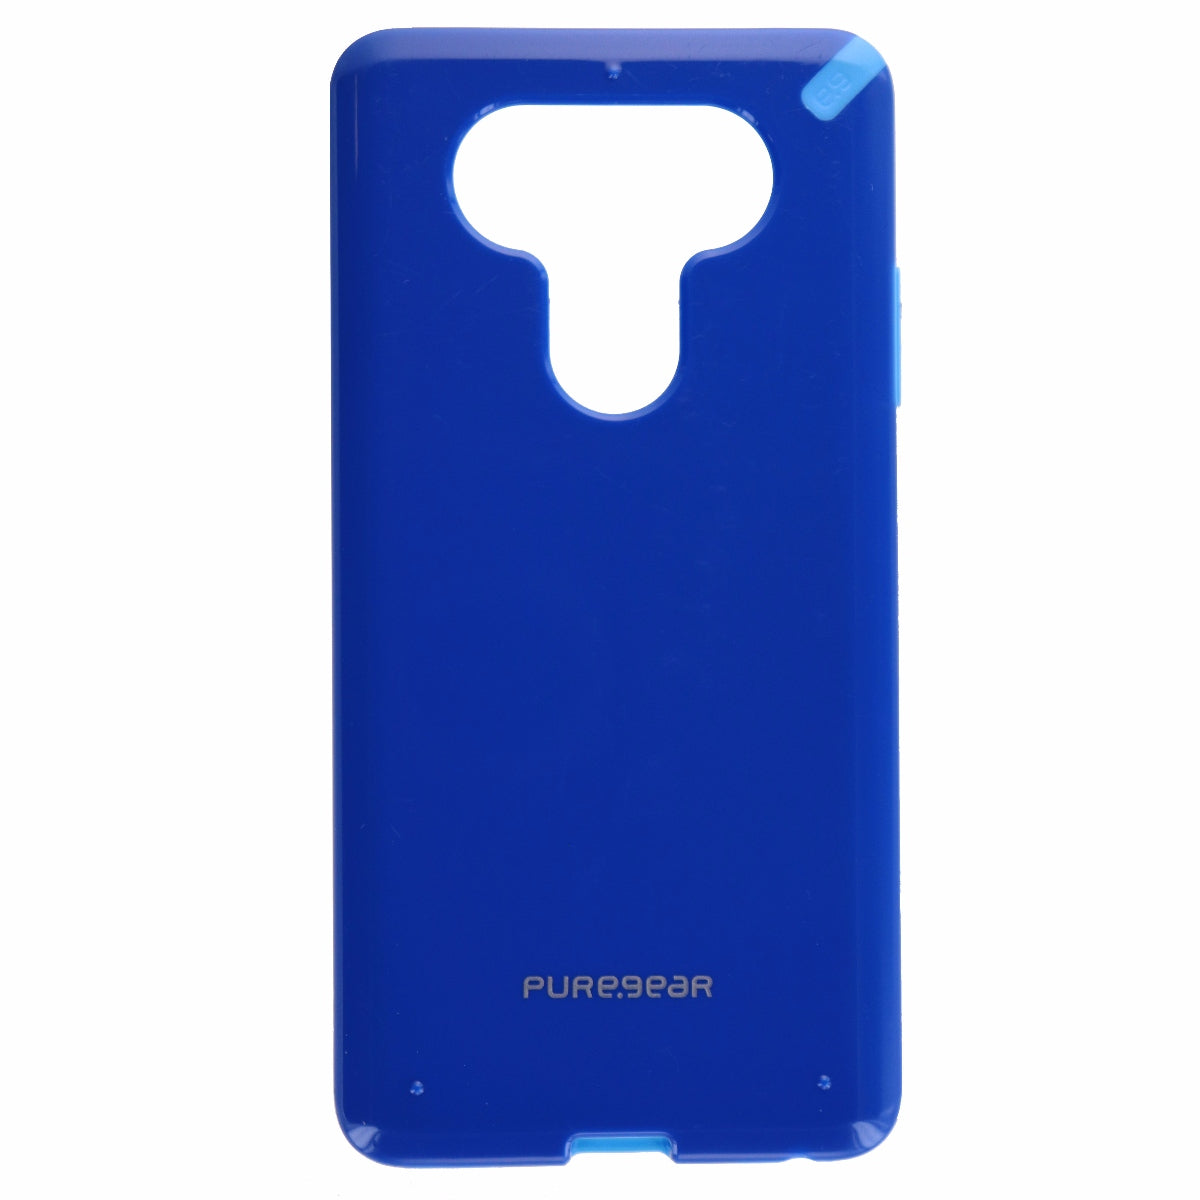 PureGear Slim Shell Series Hardshell Case Cover for LG V20 - Blue/Light Blue Cell Phone - Cases, Covers & Skins PureGear    - Simple Cell Bulk Wholesale Pricing - USA Seller